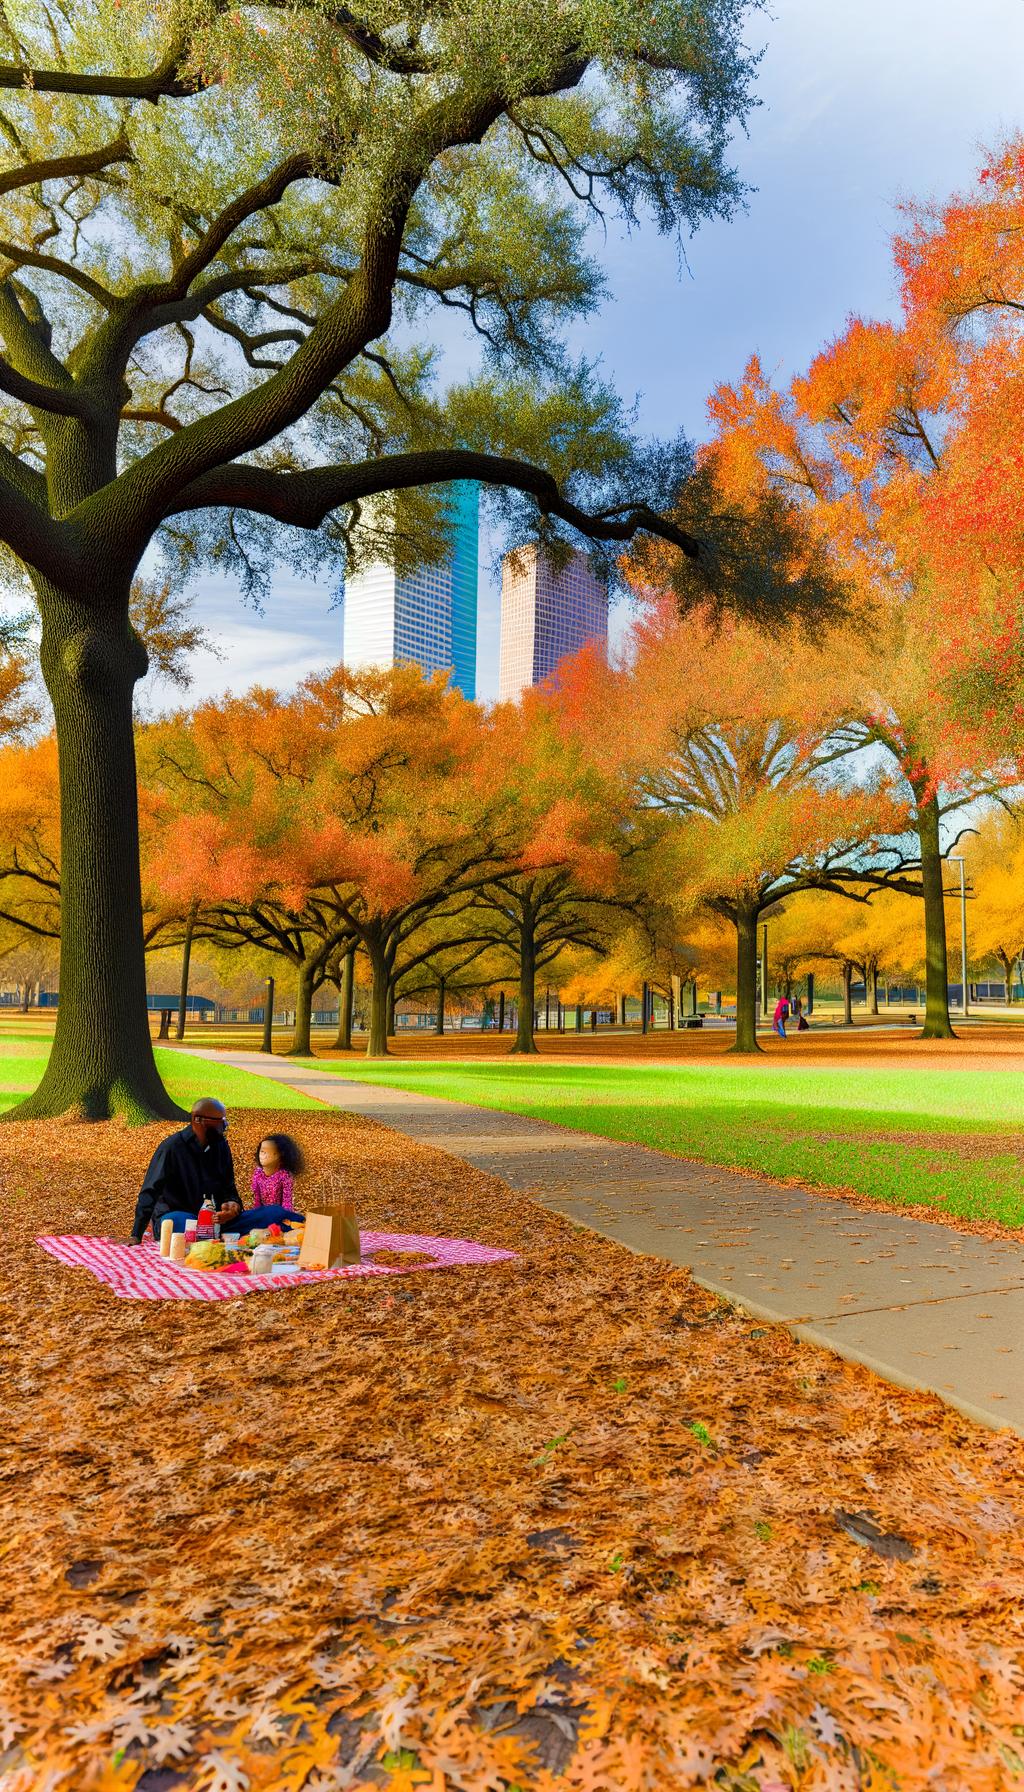 Houston park in the autumn